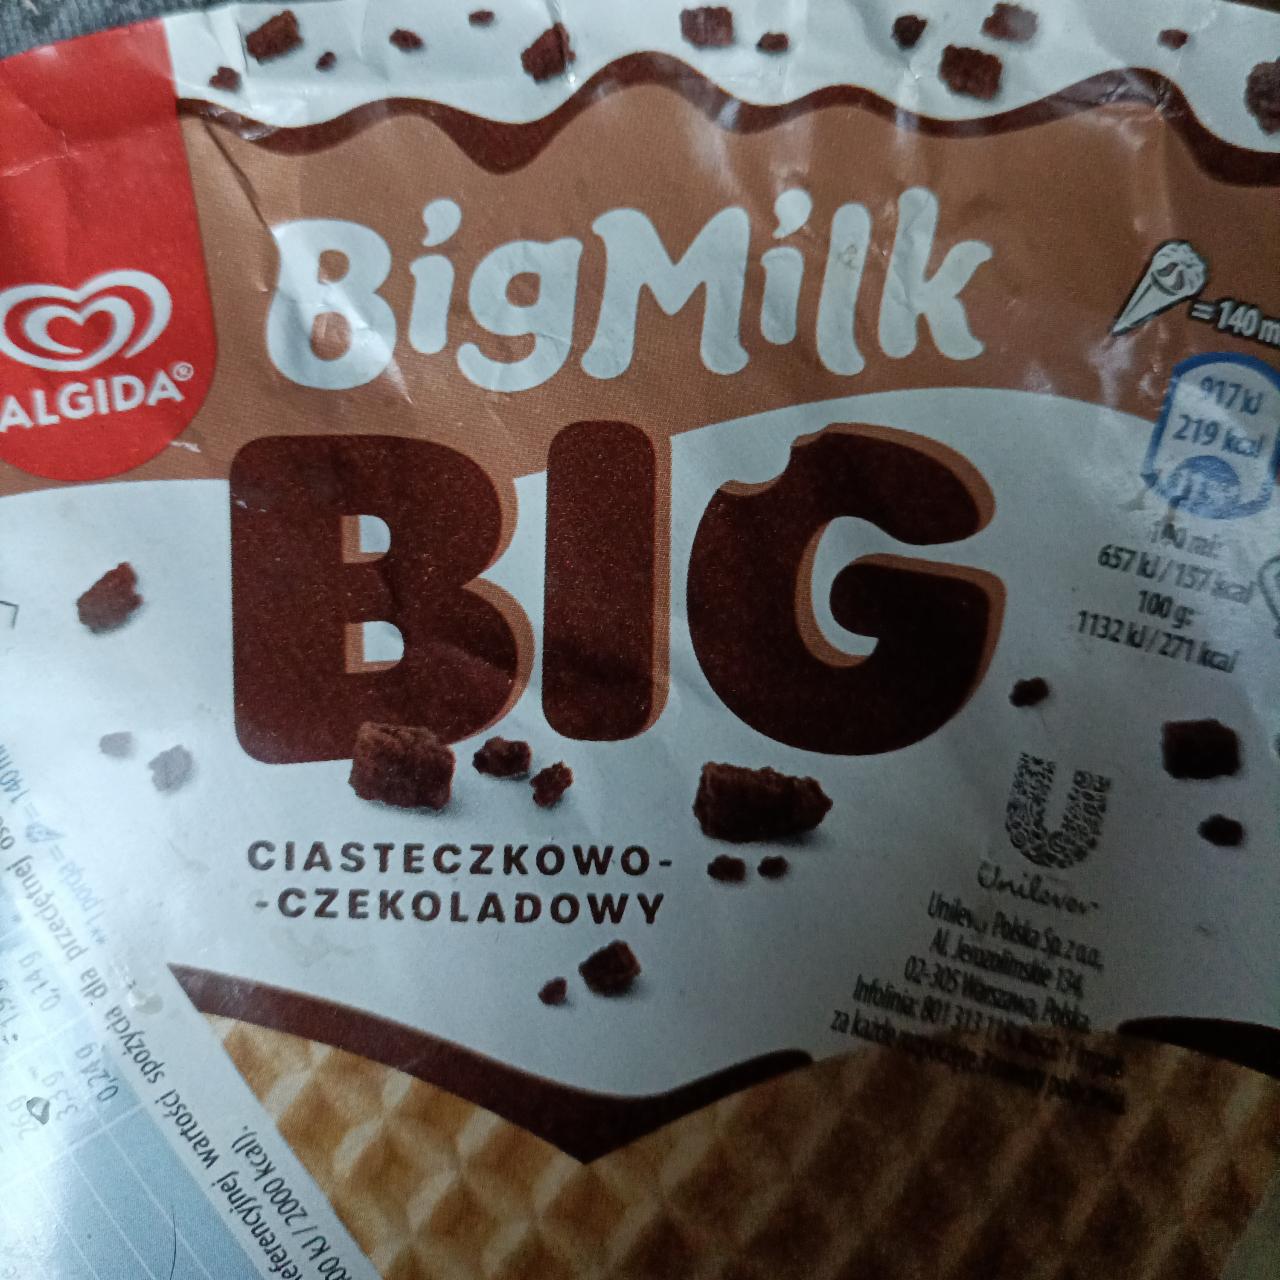 Zdjęcia - Big Milk Big ciasteczkowo czekoladowy Algida